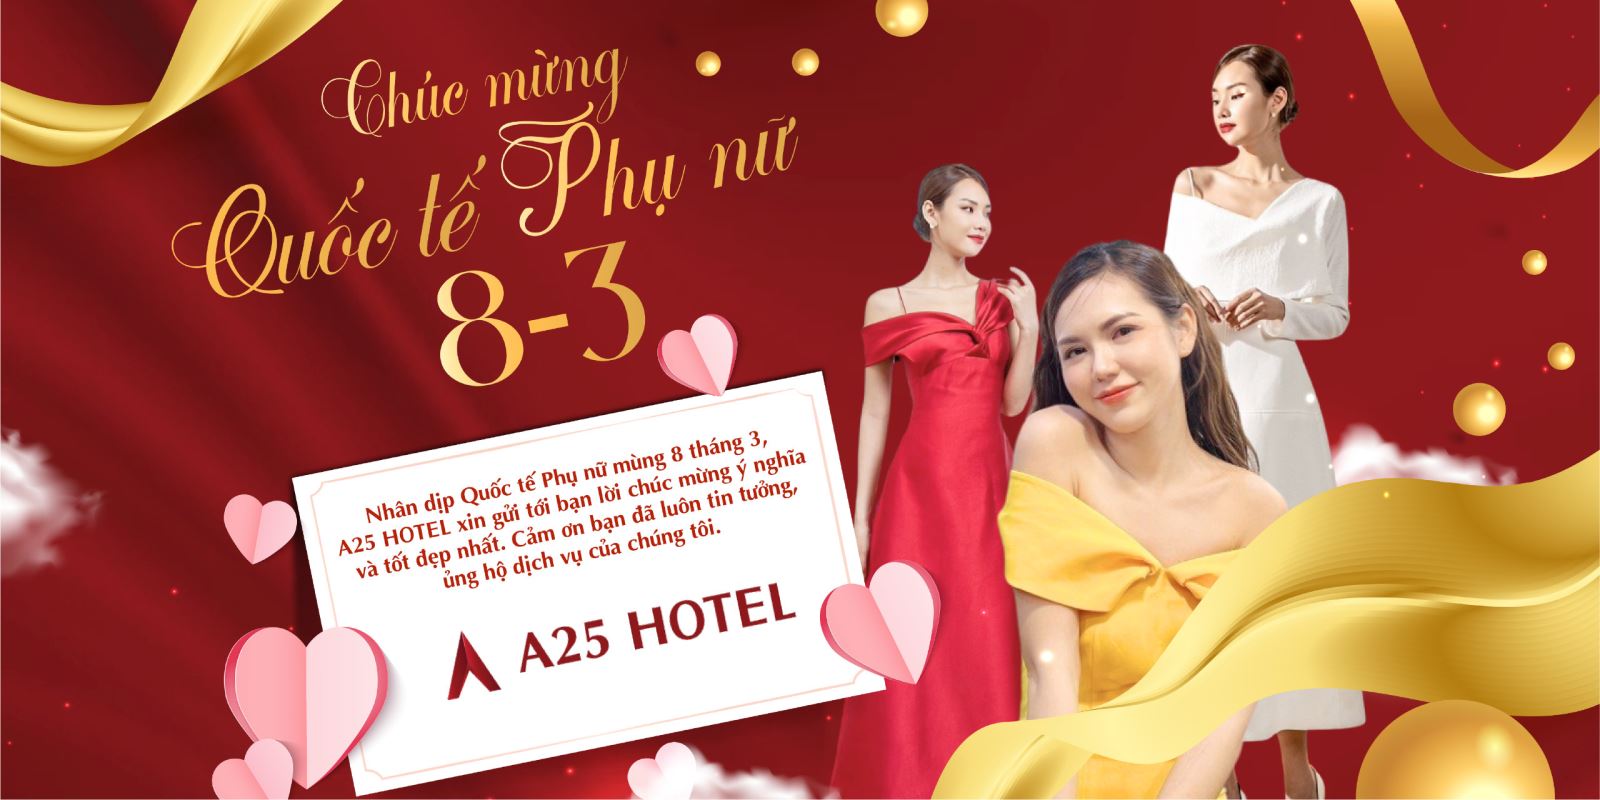 a25-hotel-chuc-mung-ngay-quoc-te-phu-nu-8-thang-3